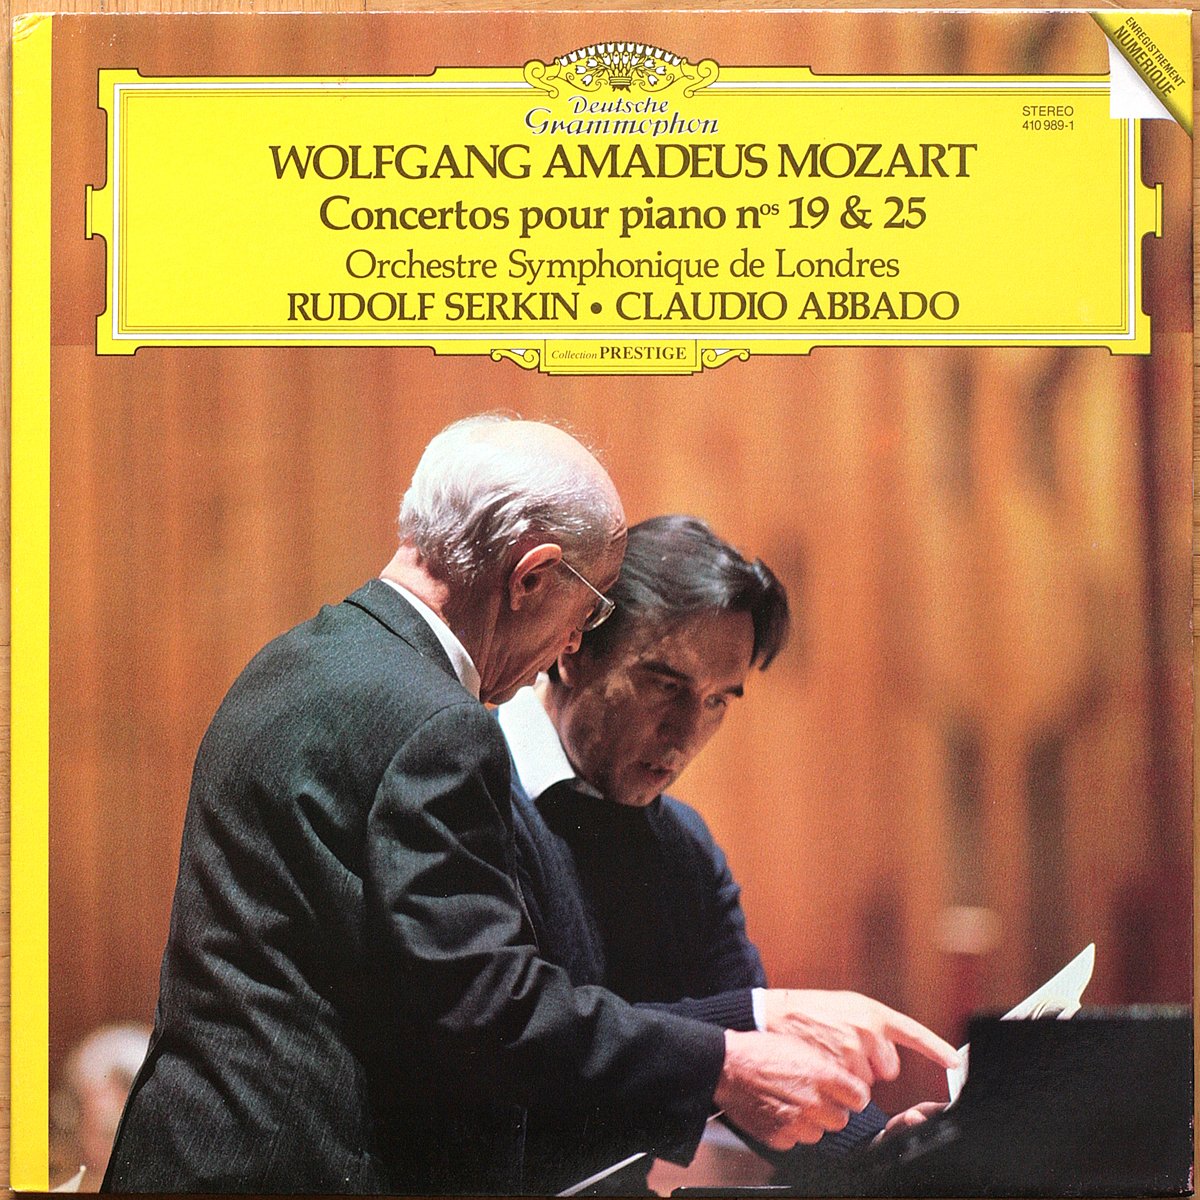 DGG 410 989 Mozart Concertos Piano 19 25 Serkin Abbado DGG Digital Aufnahme